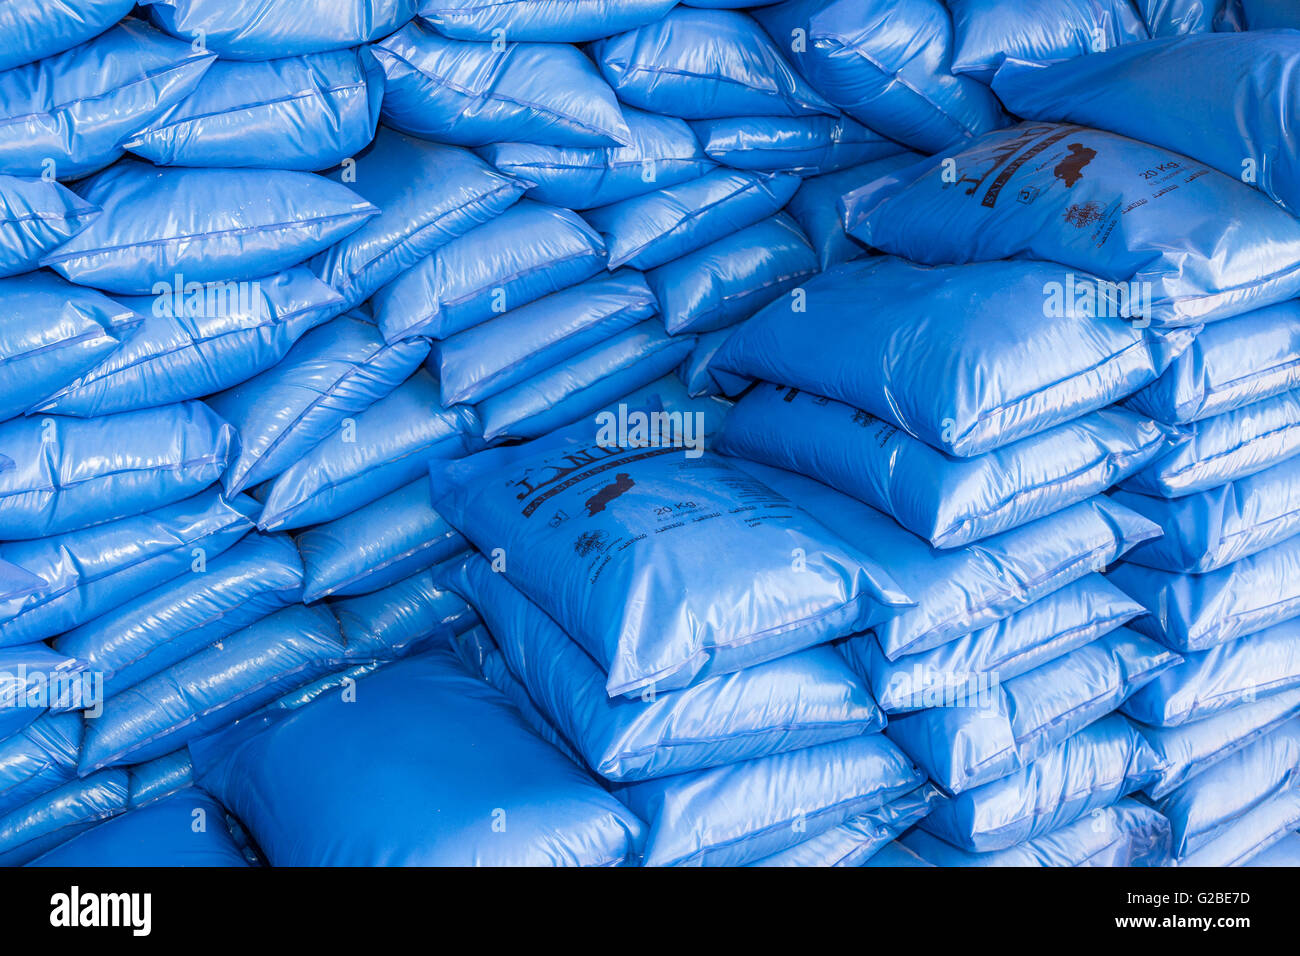 Sacchetti di sale pranzo in blu di sacchetti di plastica a saline, Janubio, Lanzarote, Isole Canarie, Spagna Foto Stock